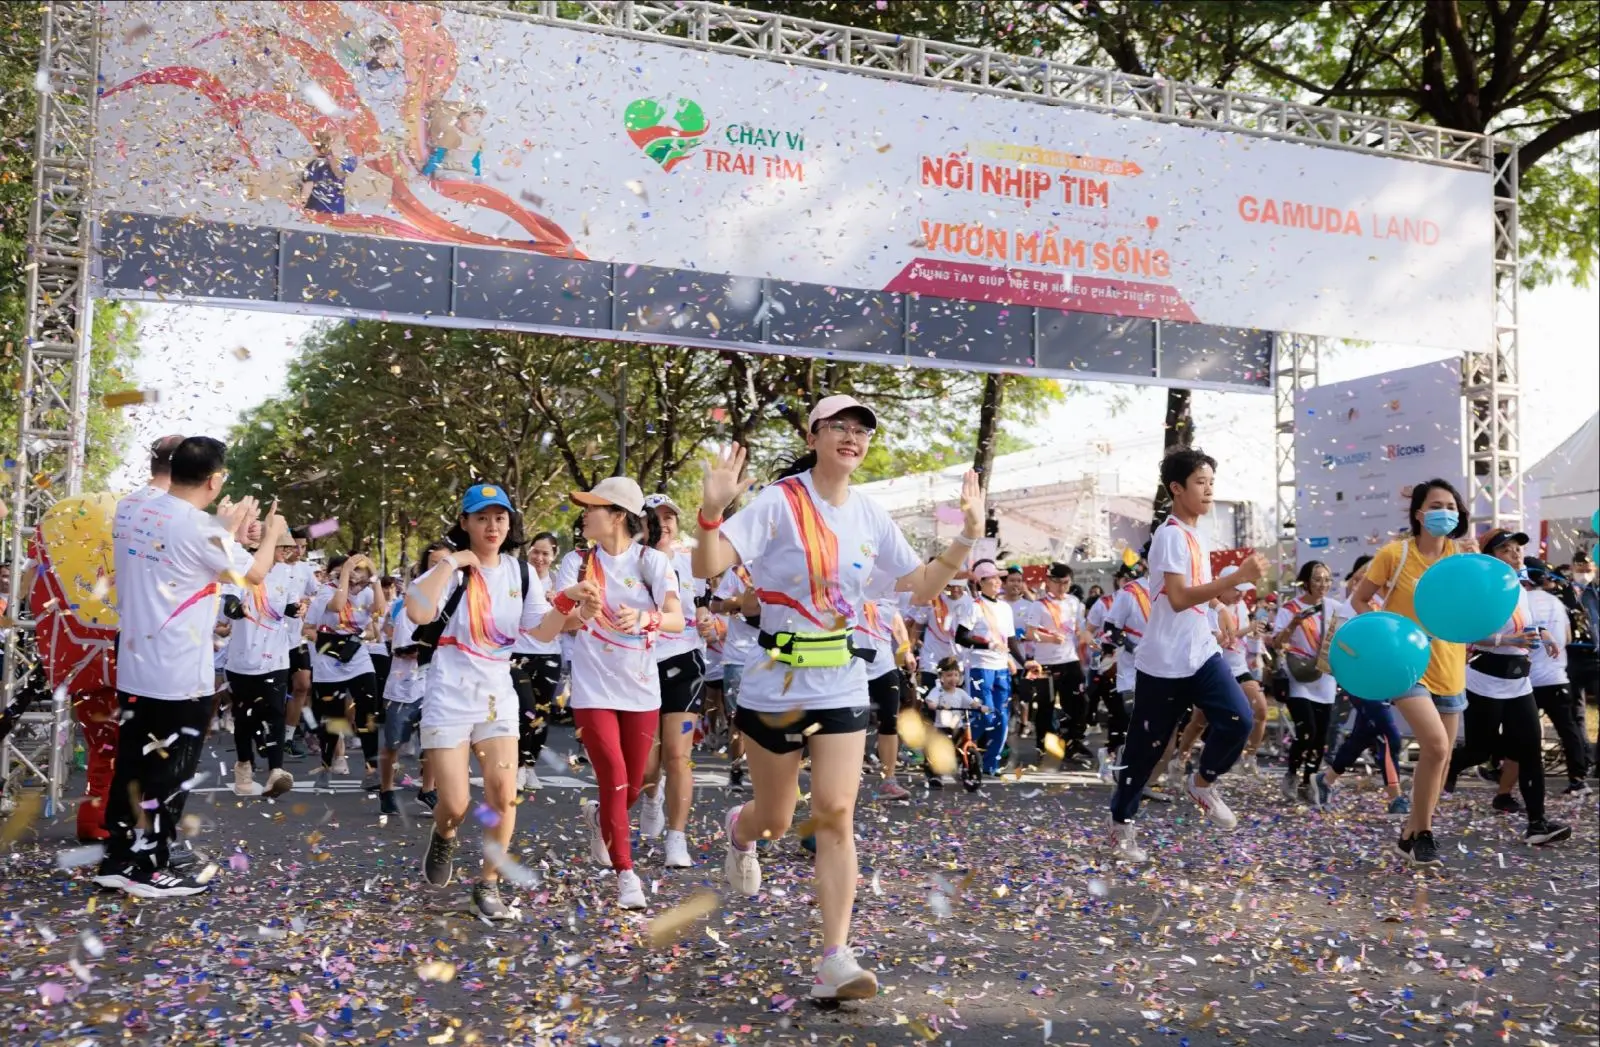 Giải chạy “Chạy vì trái tim” tổ chức hàng năm mang đậm dấu ấn doanh nghiệp